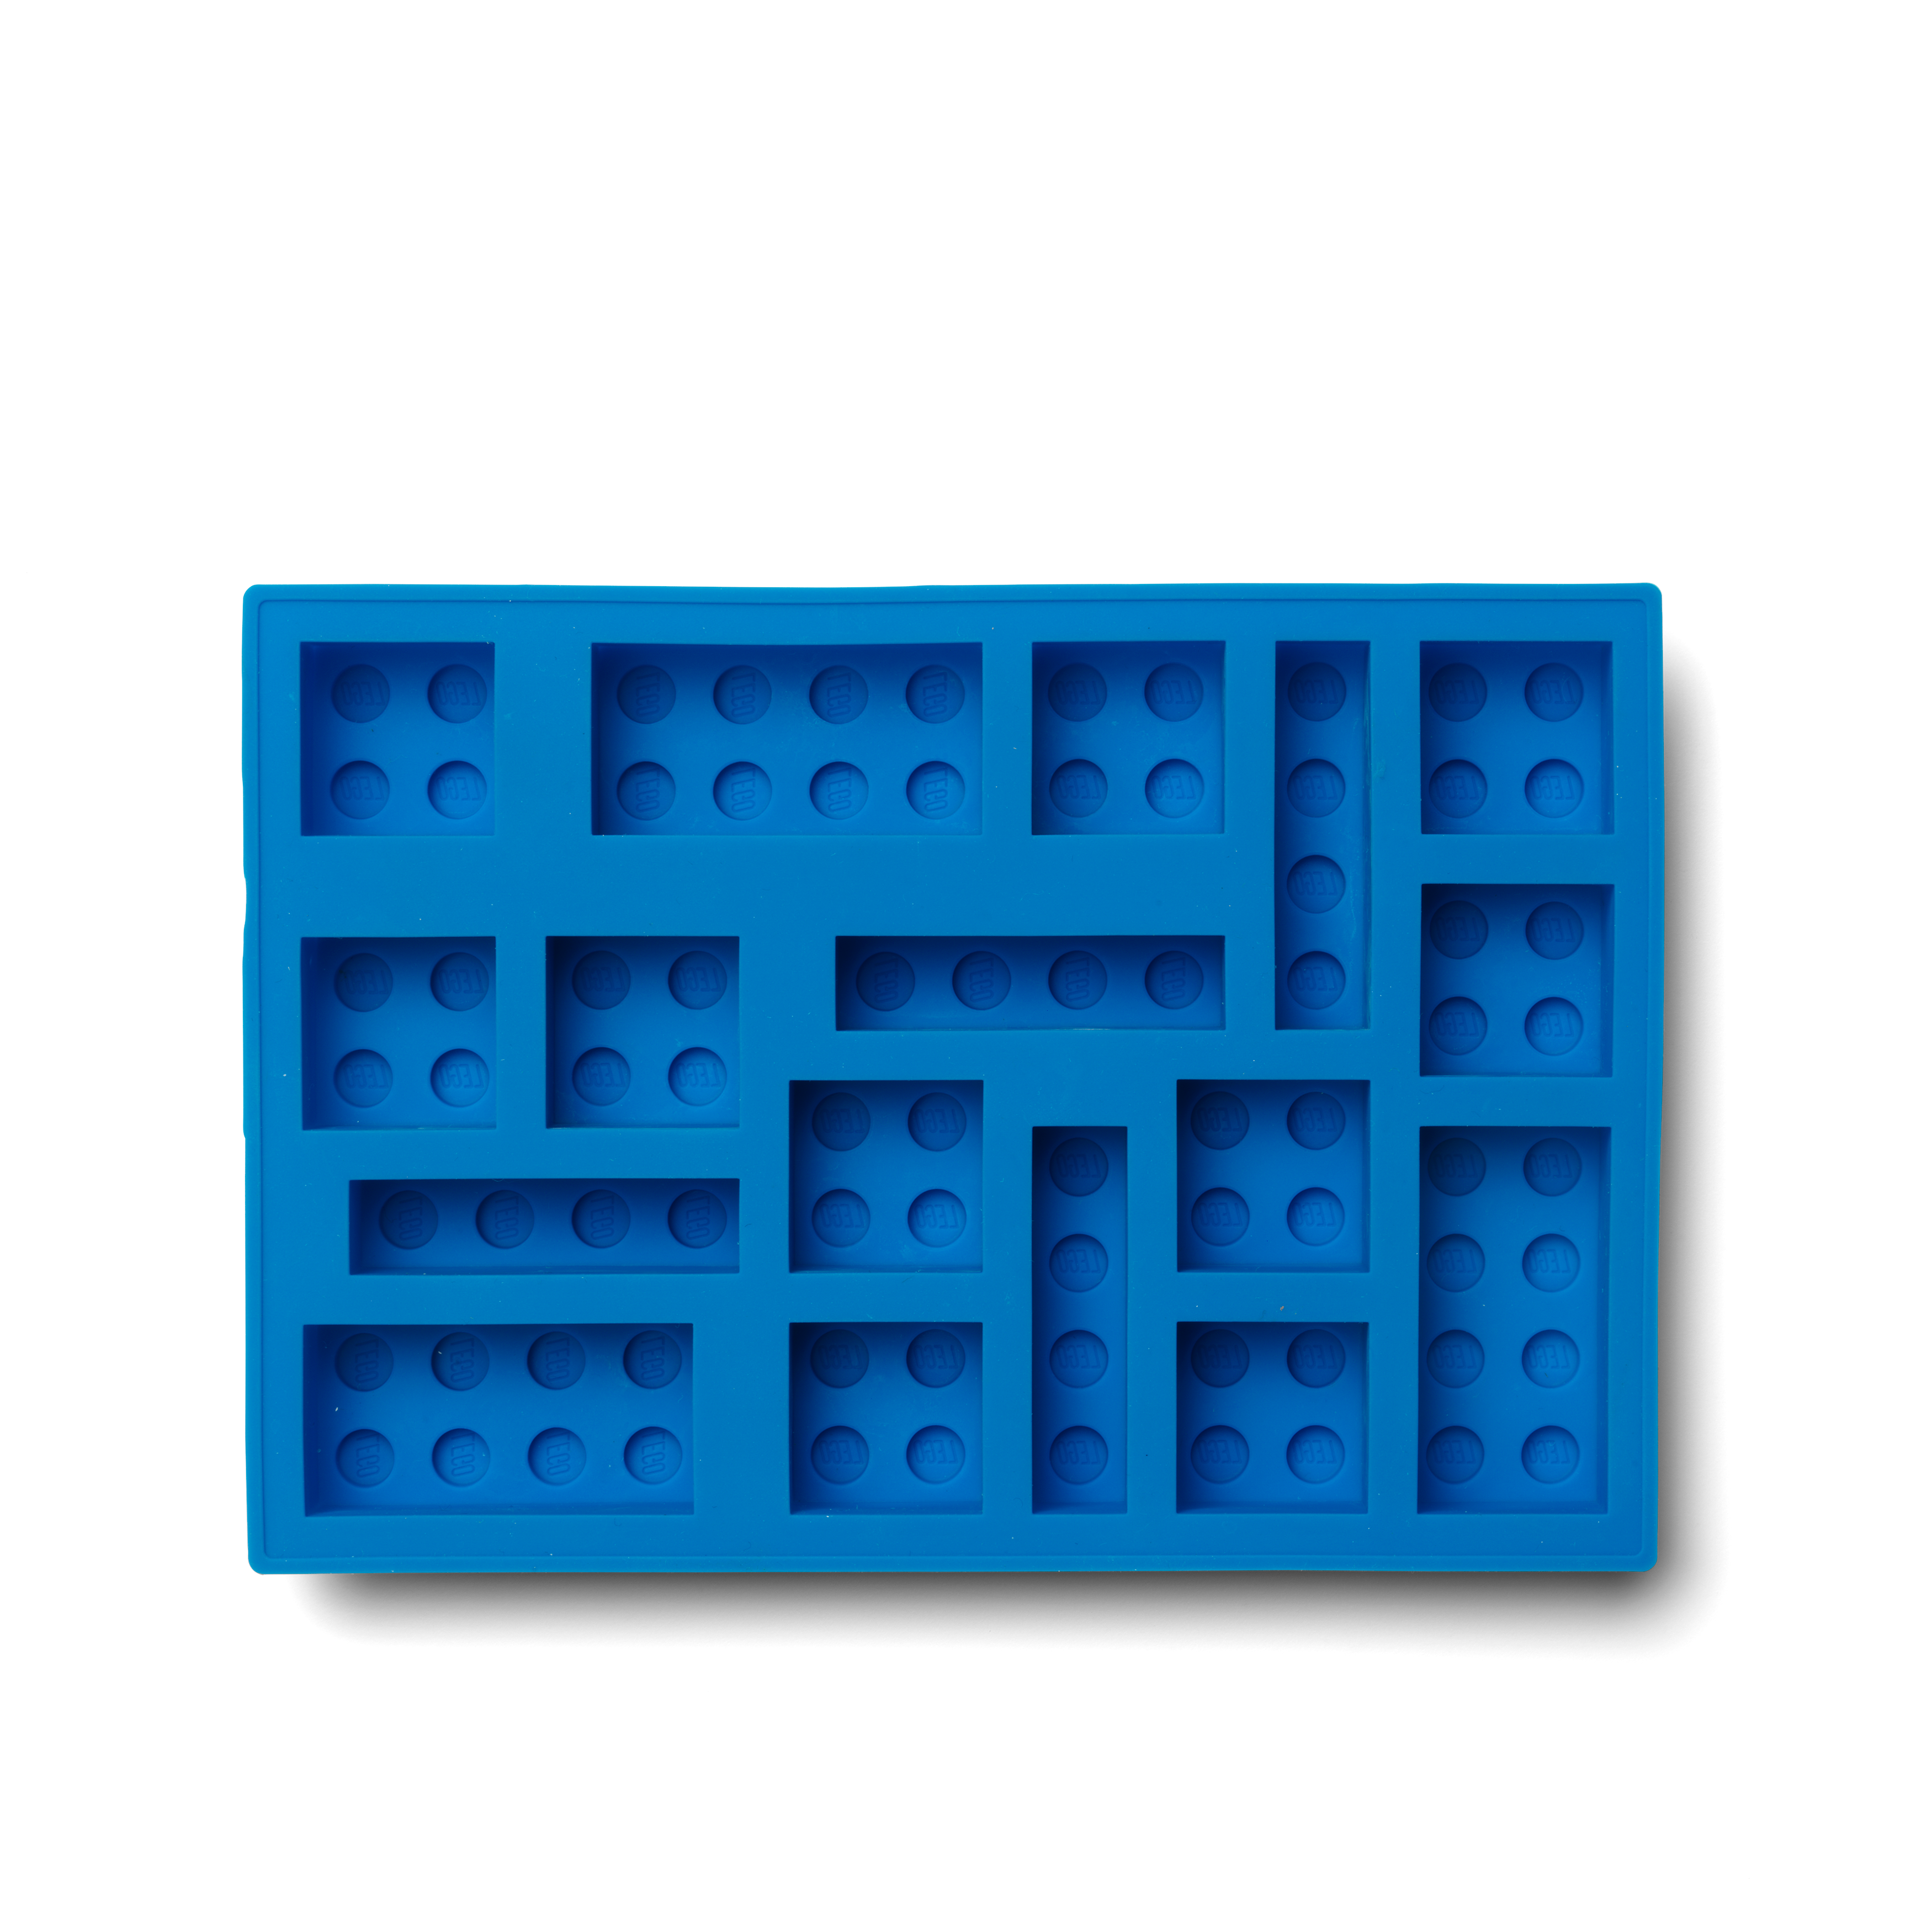 Lego Character Ice Cube Tray - Lego Man